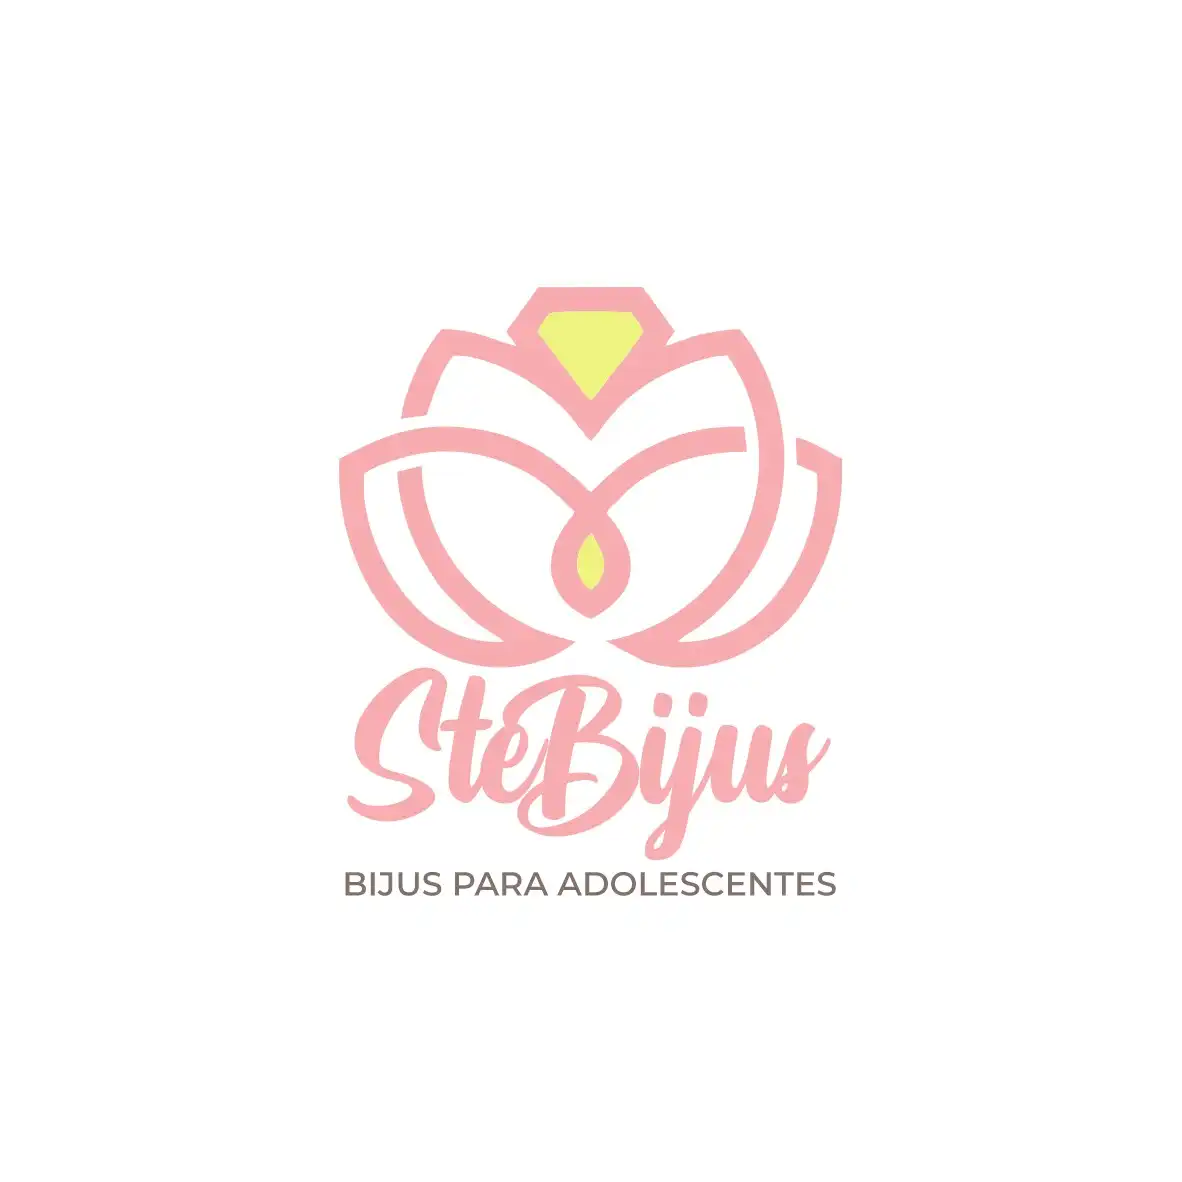 
Logotipo Logomarca Bijus para Adolescentes



